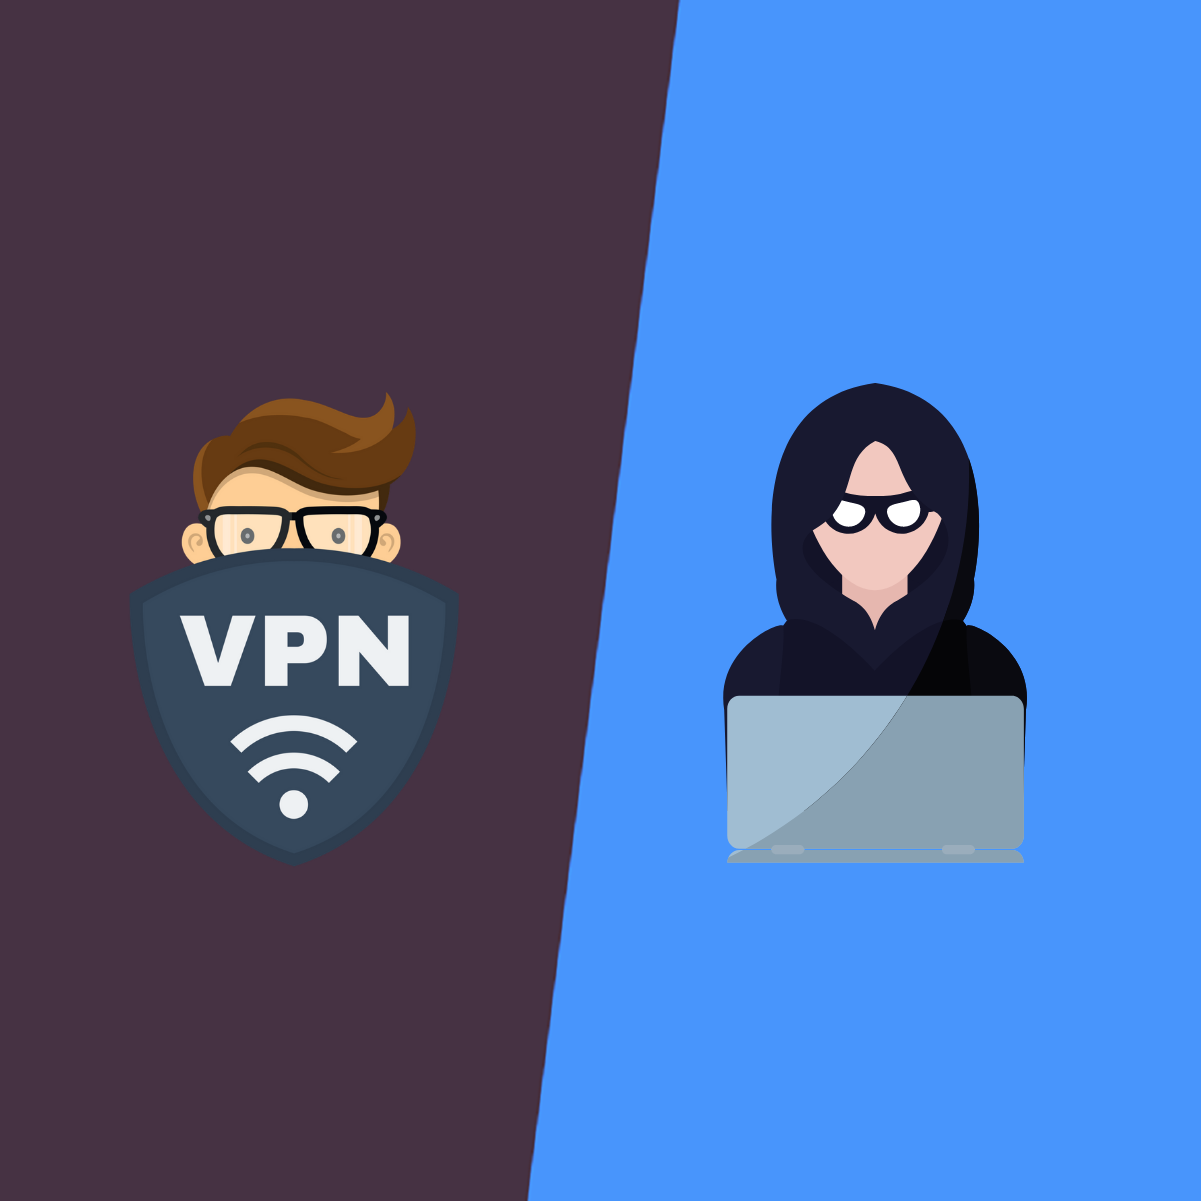 使用VPN时，您可能会遭到黑客攻击吗